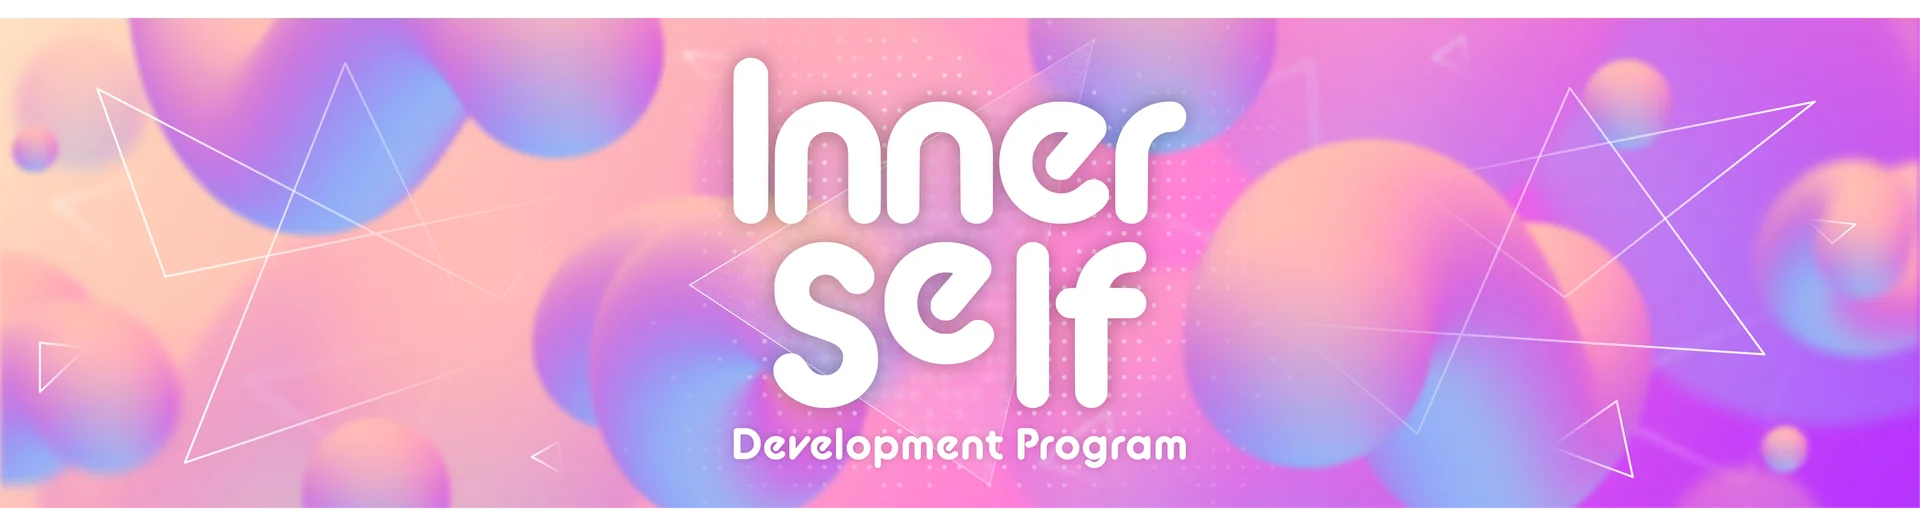 Download Inner Self Development Program